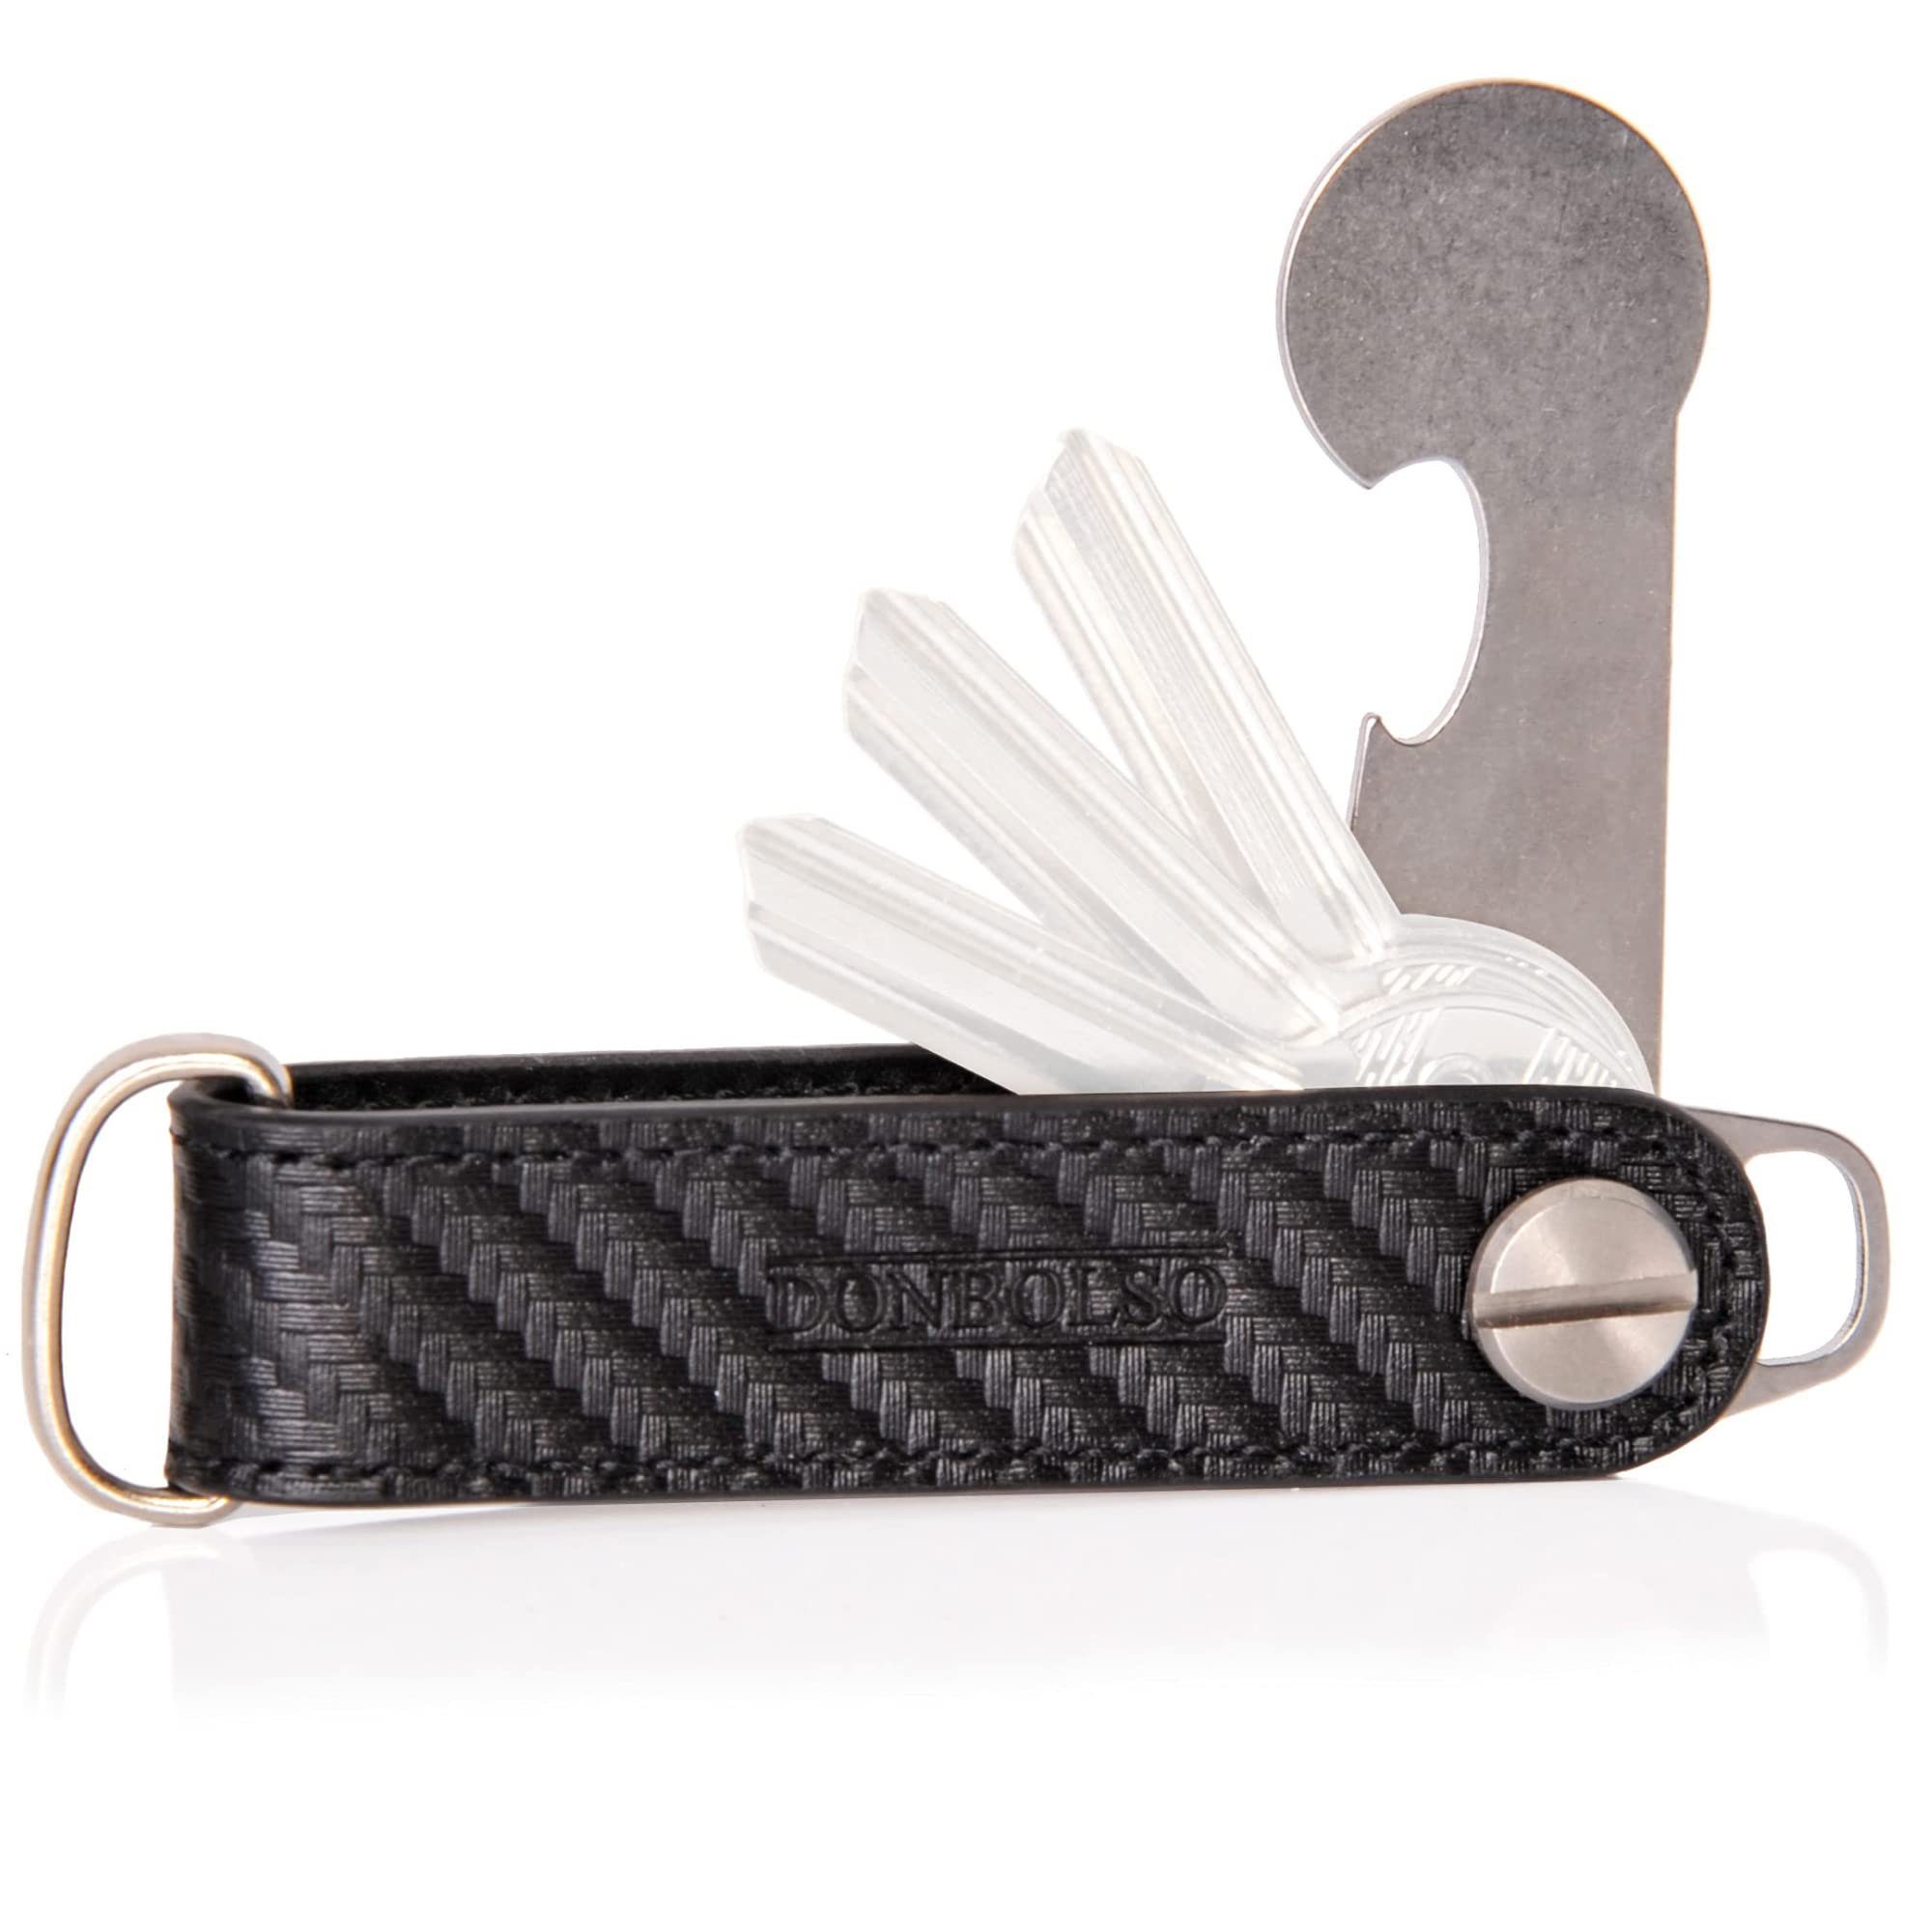 Schlüsselorganizer mit Edelstahlscheibe, & Edelstahl Leder Donbolso Schlüsseltasche / Sschlüssel Carbon-Schwarz Einkaufswagenlöser Edelstahl Organizerleder